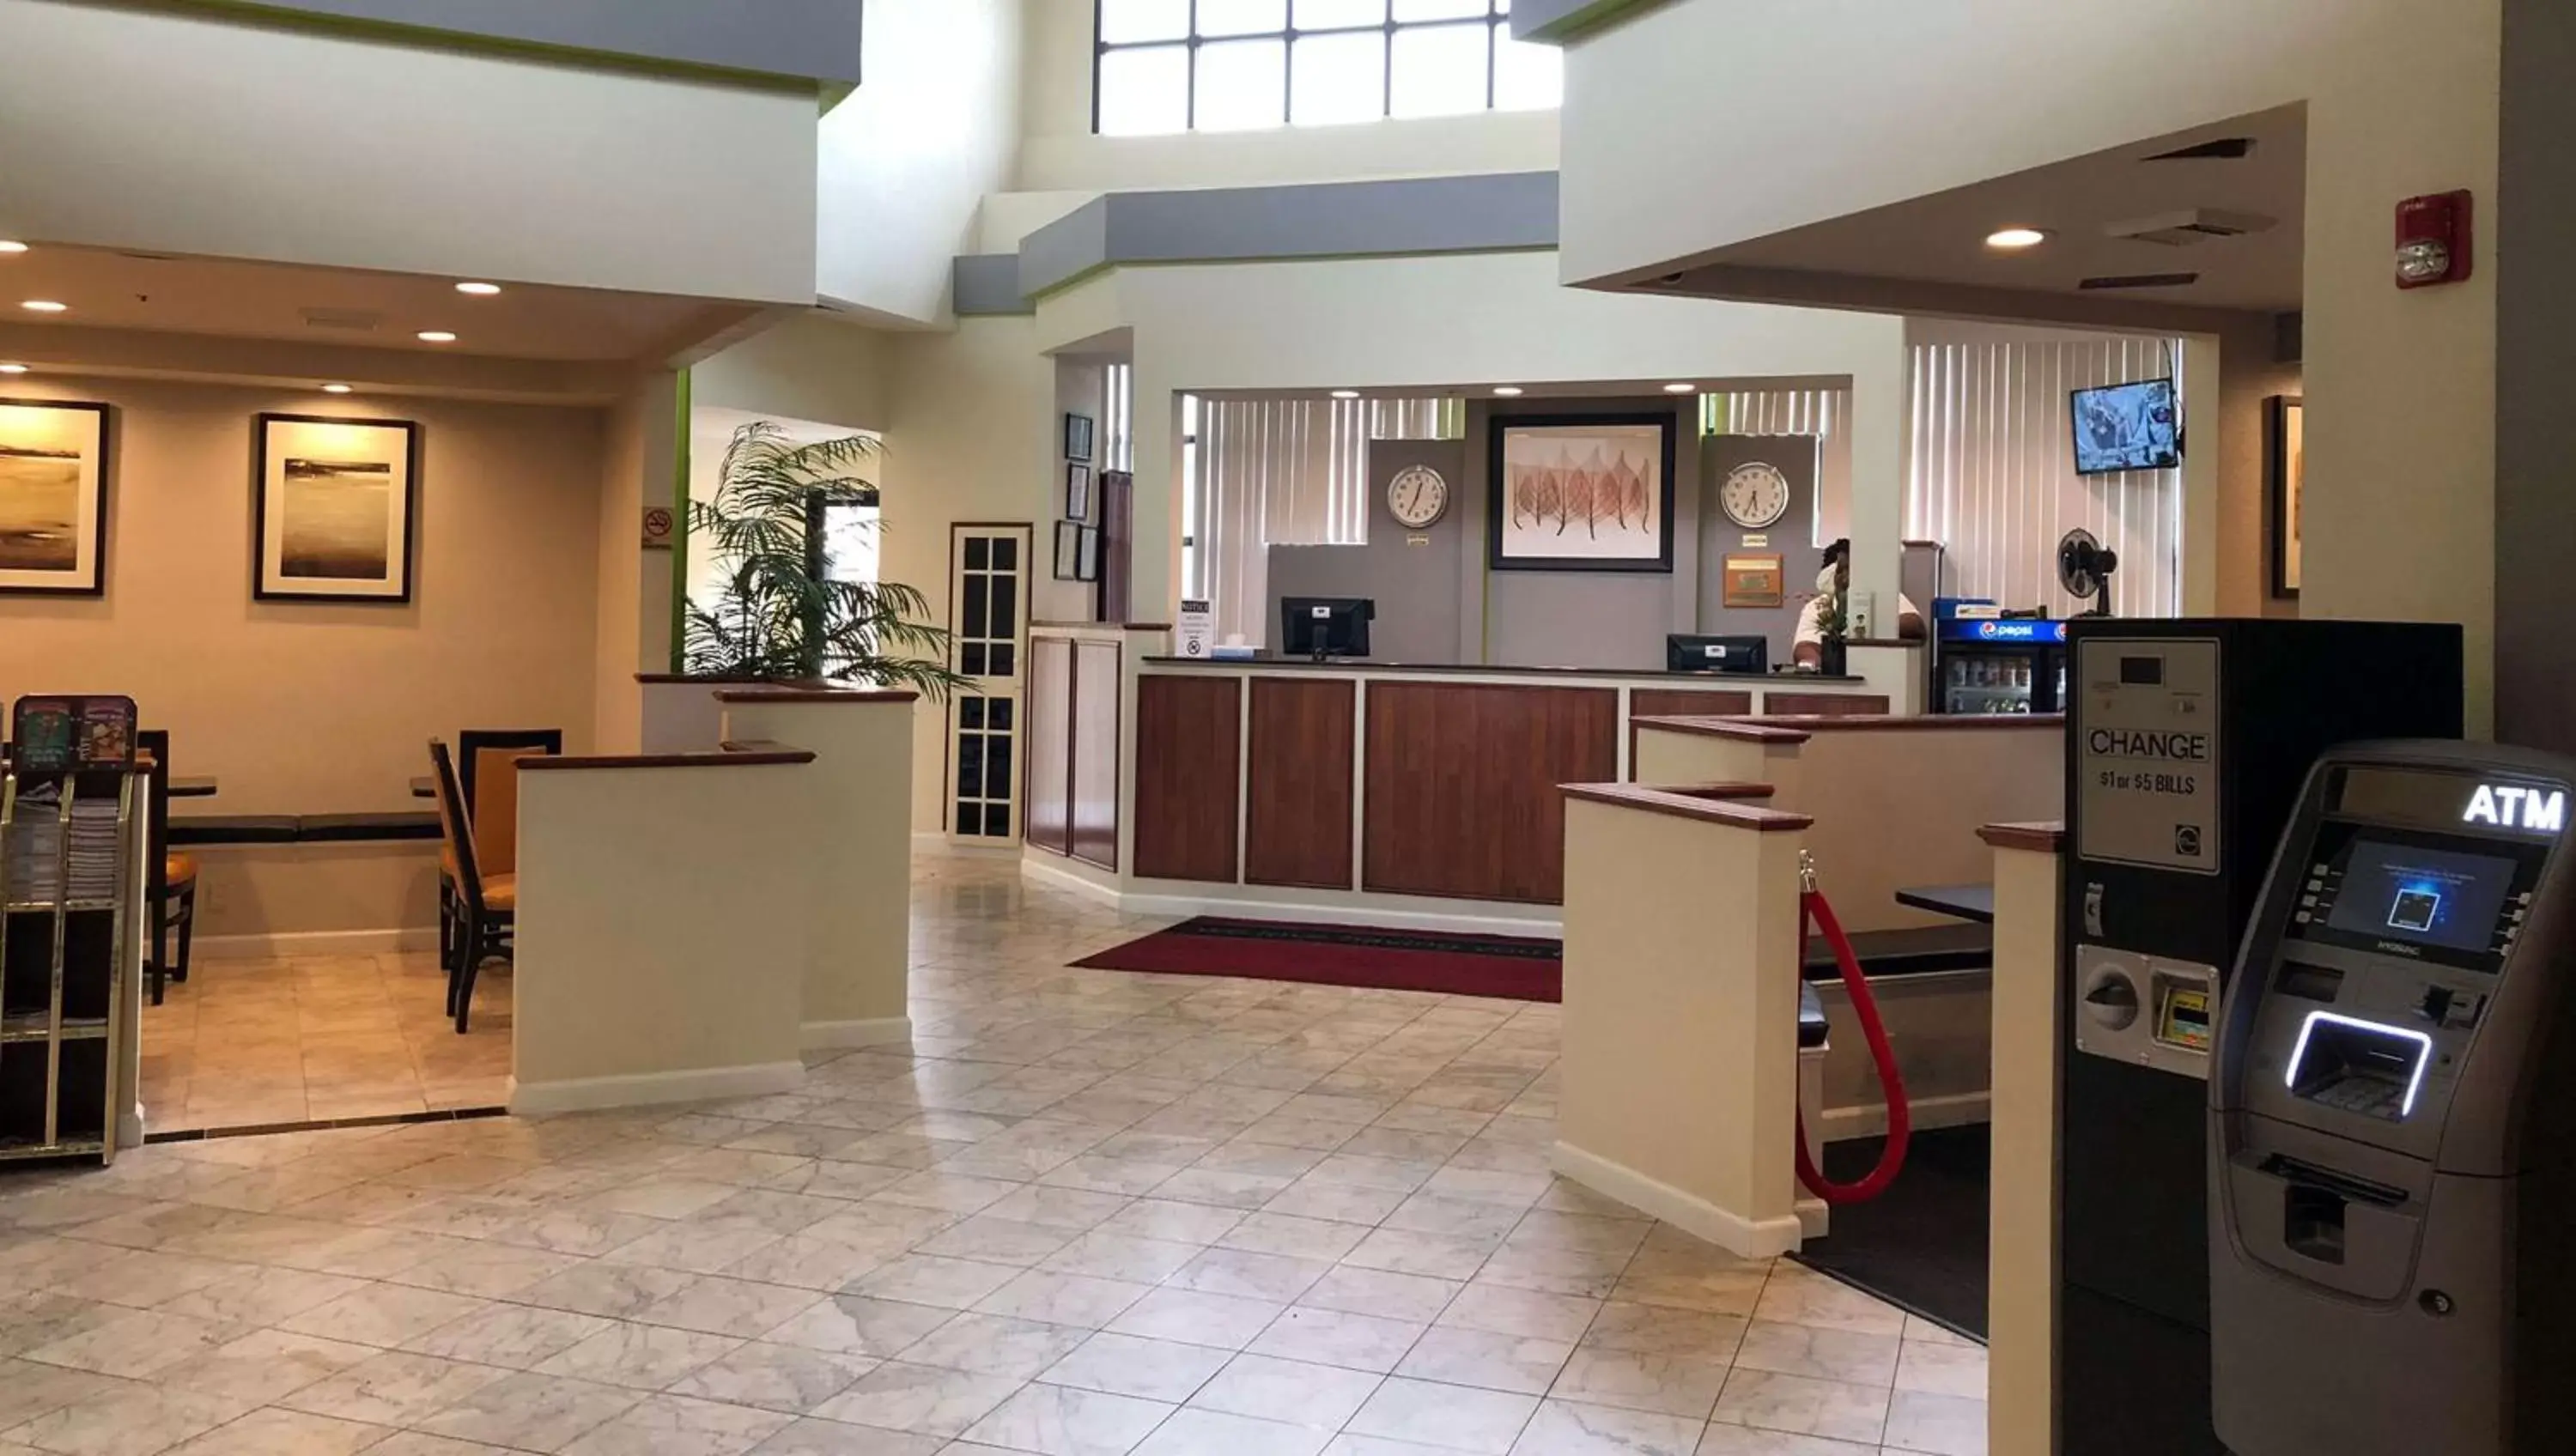 Lobby or reception, Lobby/Reception in Magnuson Hotel Virginia Beach